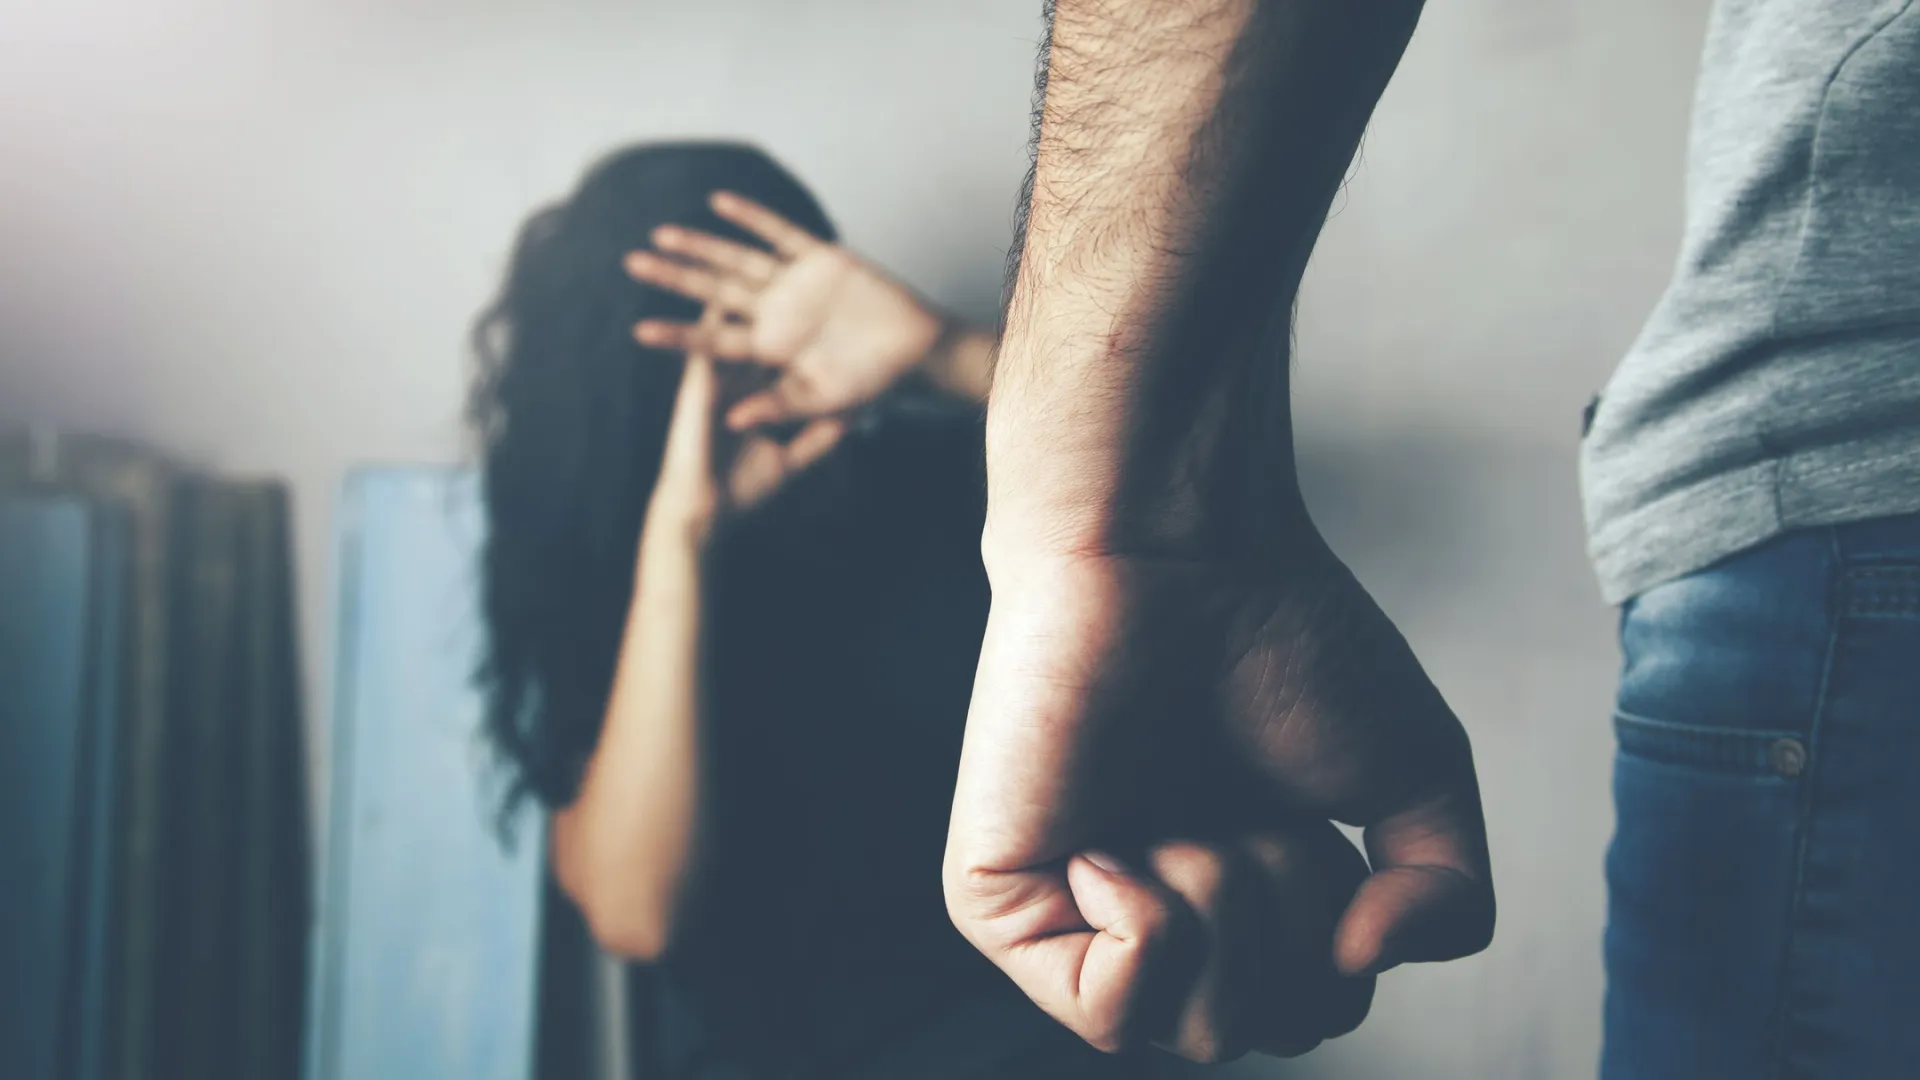 В Новом Уренгое женщины страдают от домашнего насилия. Фото: Tiko Aramyan / Shutterstock / Fotodom